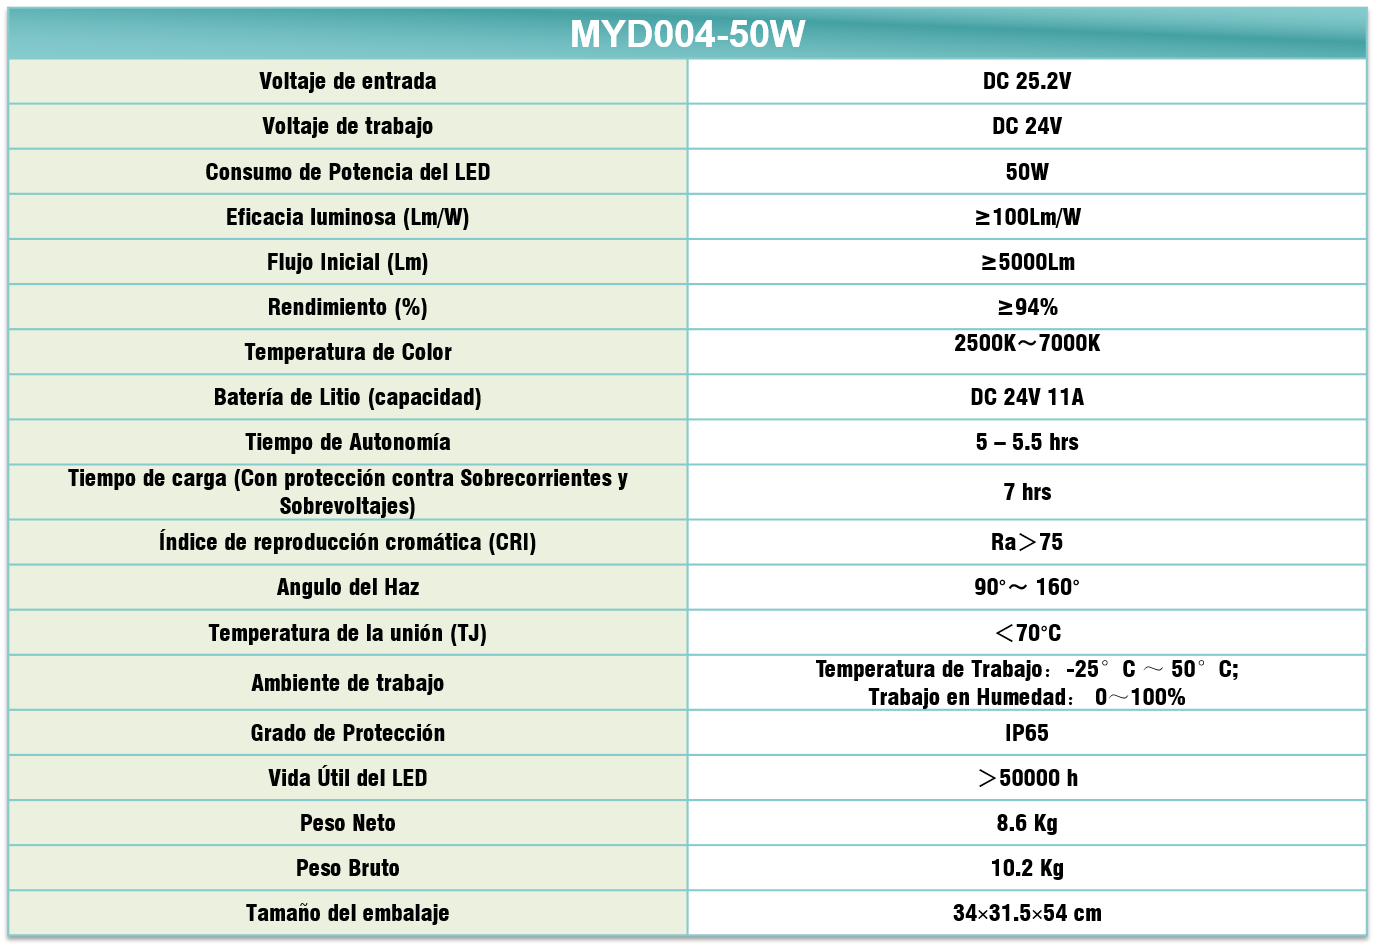 Especificaciones tecnicas MYD004-50W
